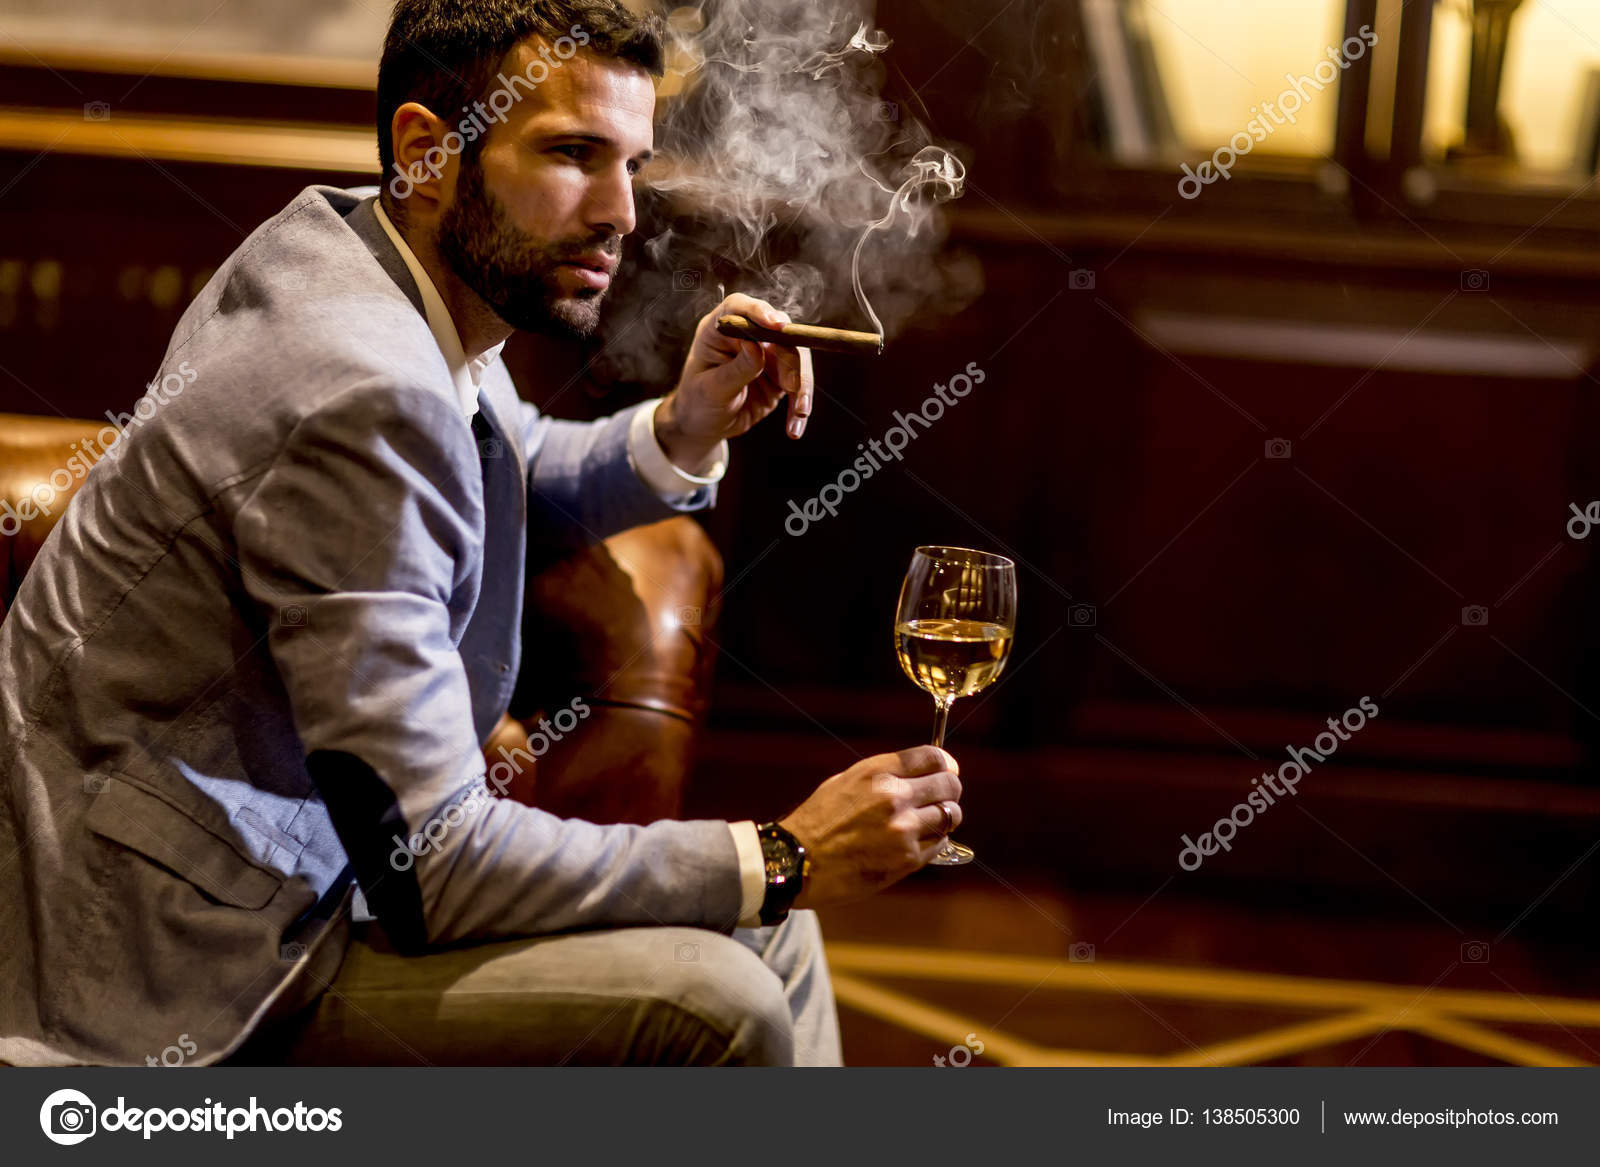 图片素材 : 人, 抽烟, 黑暗, 火焰, 灯光 4104x2736 - - 53836 - 素材中国, 高清壁纸 - PxHere摄影图库